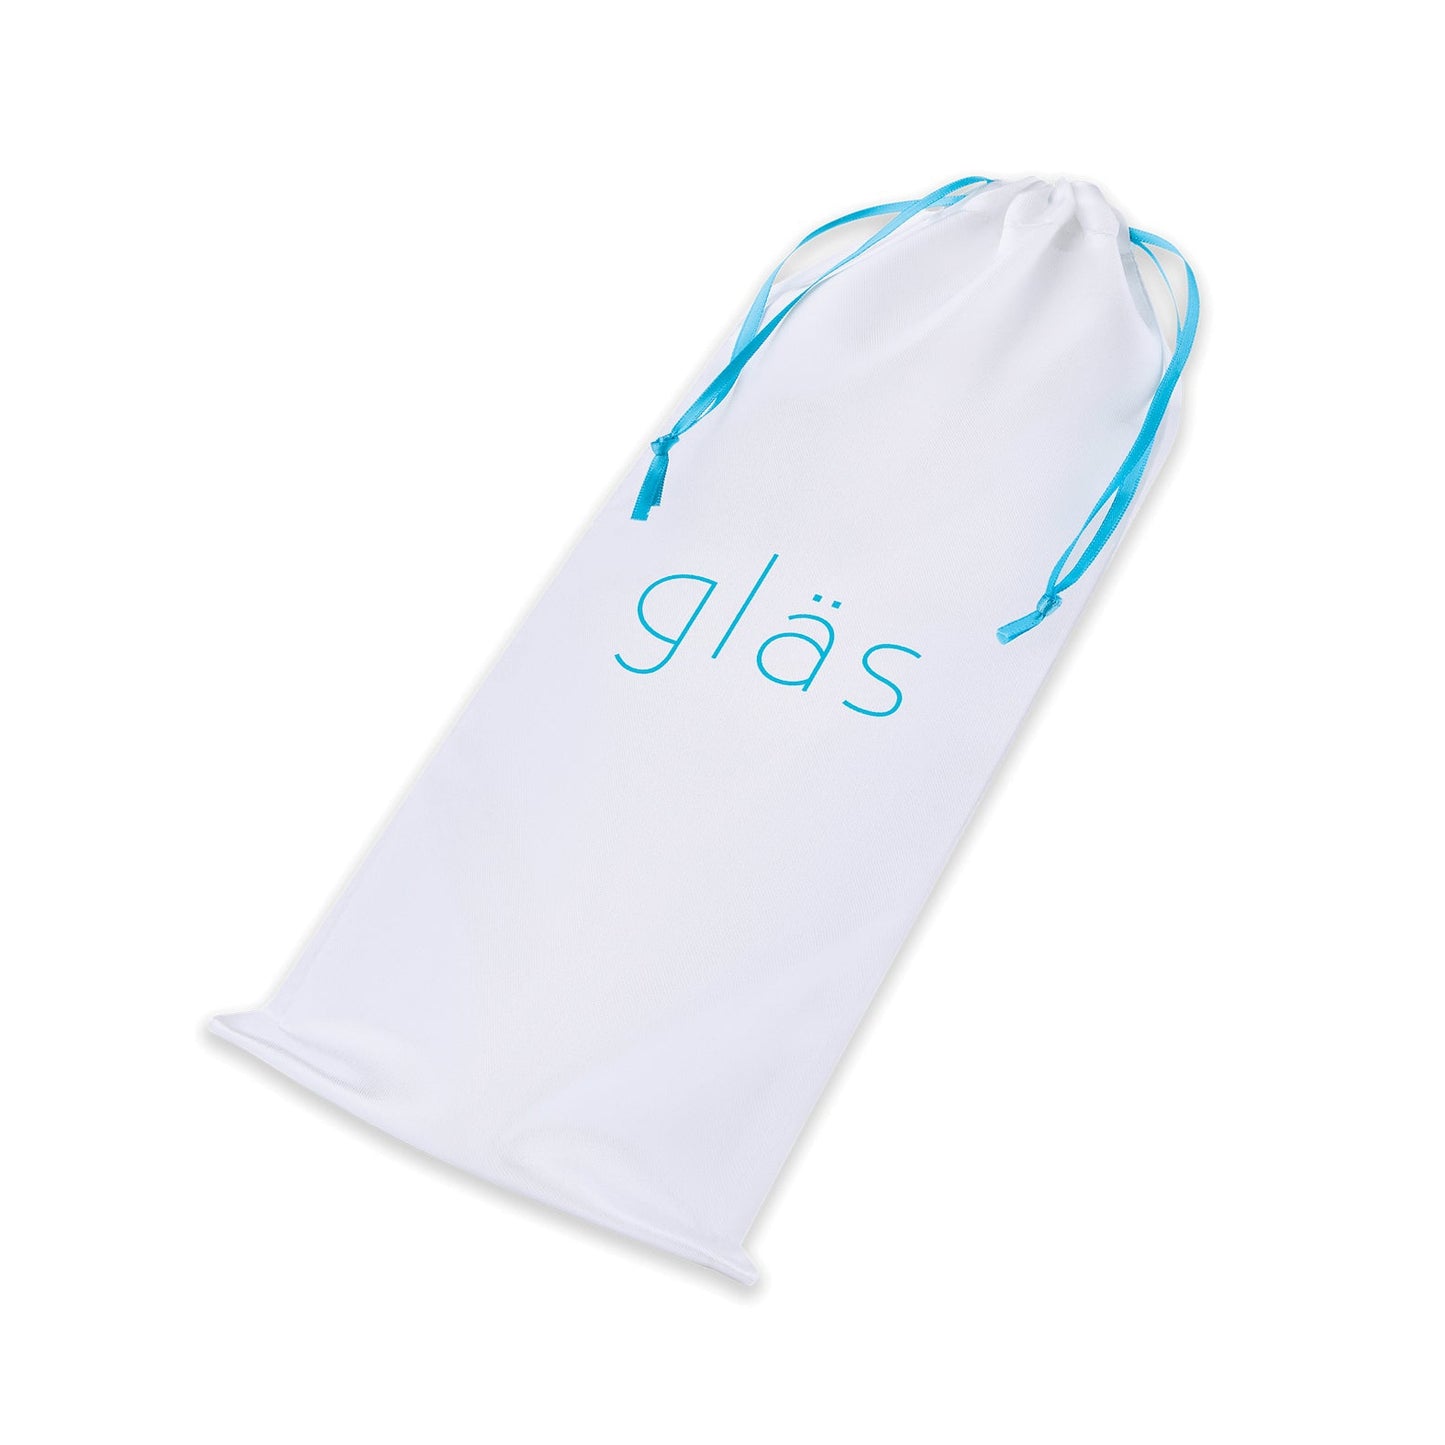 Glas Pleasure Droplets Anal Training Kit